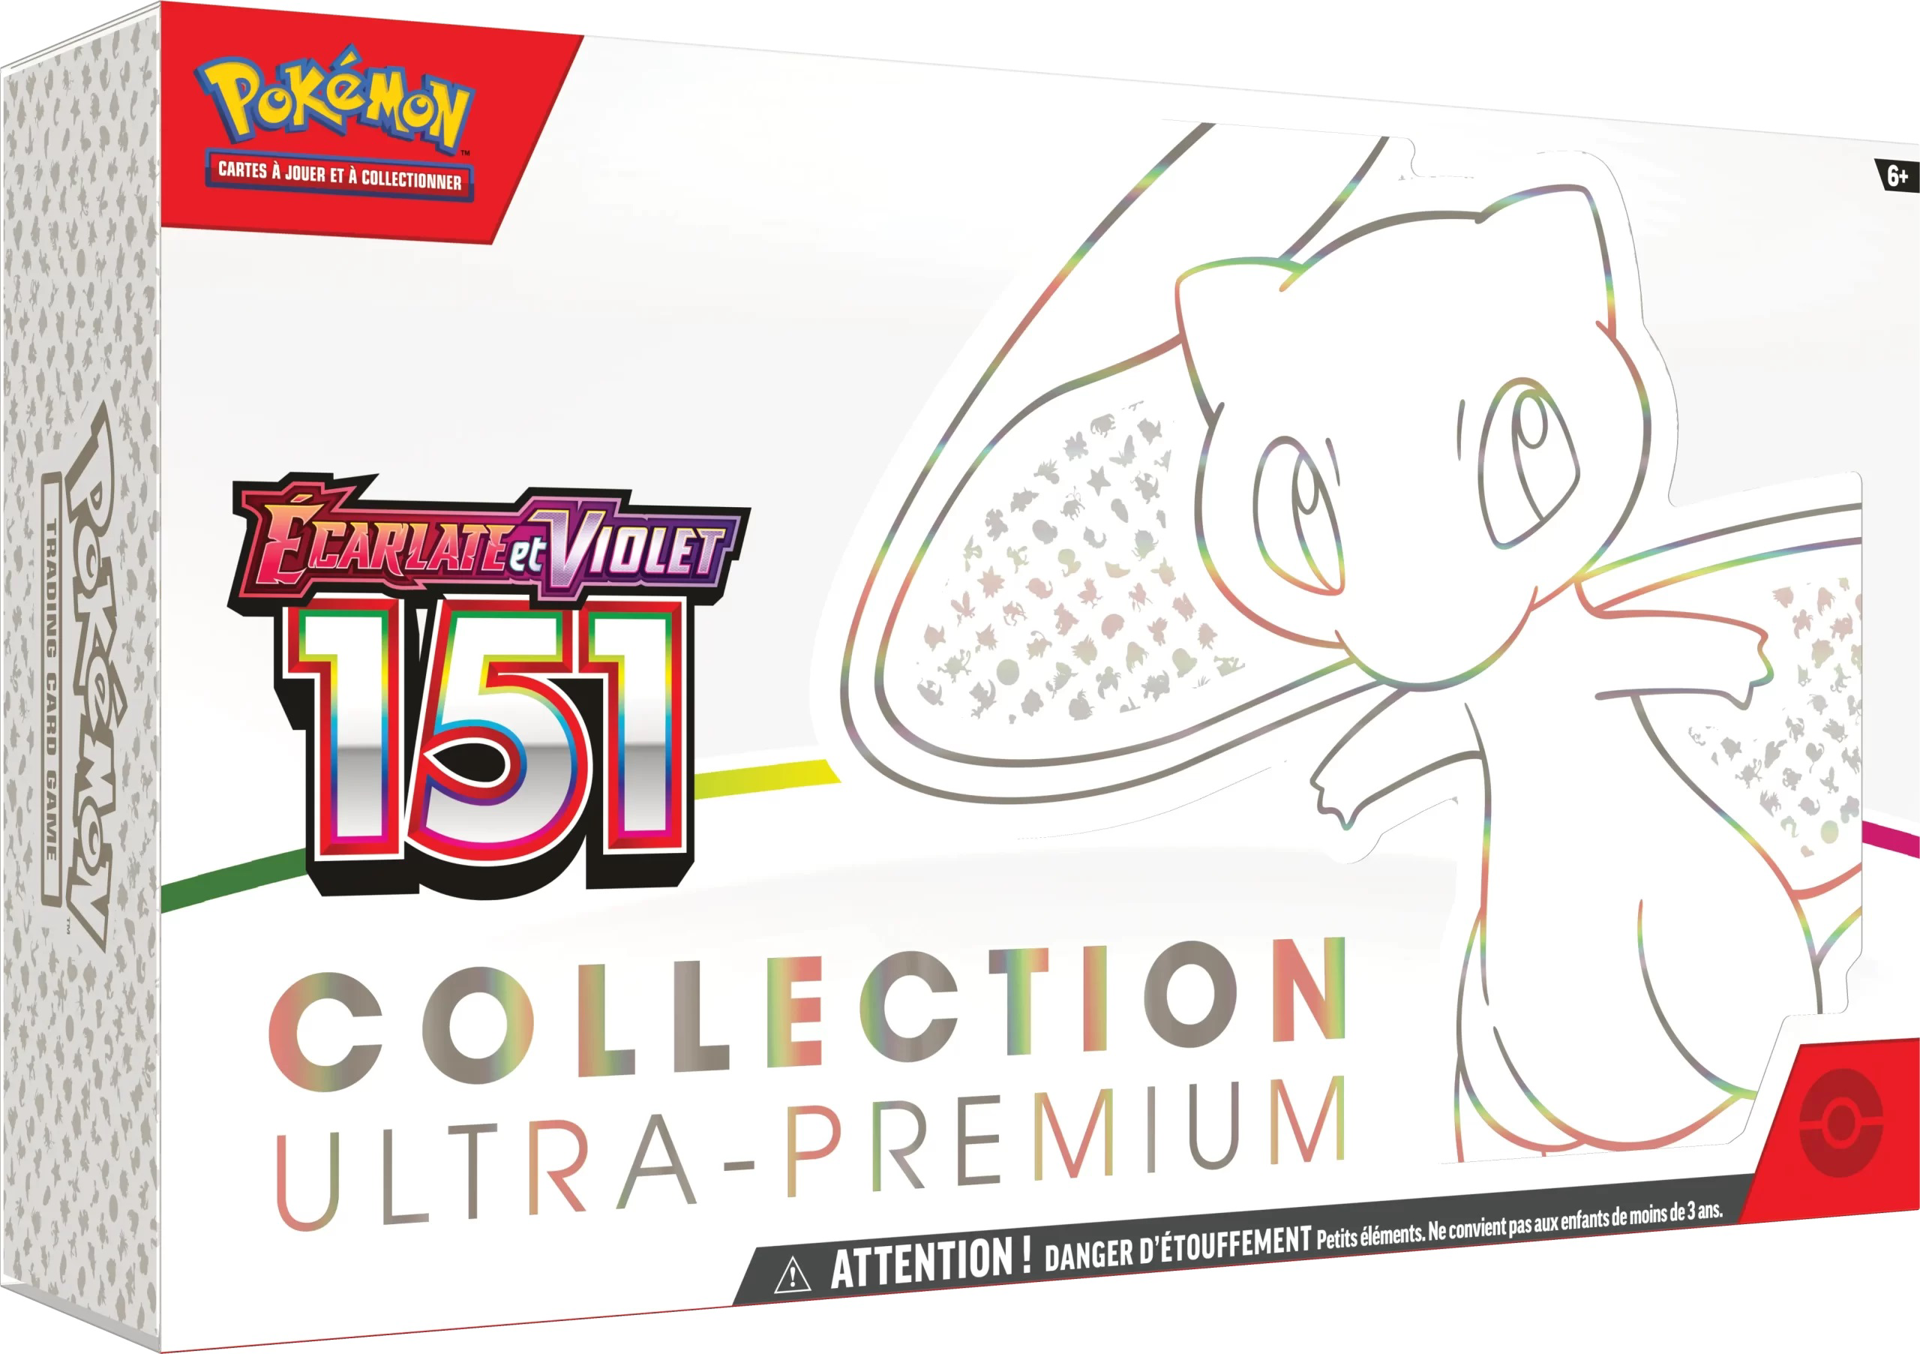 Pokémon JCC : Collection Ultra-Premium Écarlate et Violet - 151